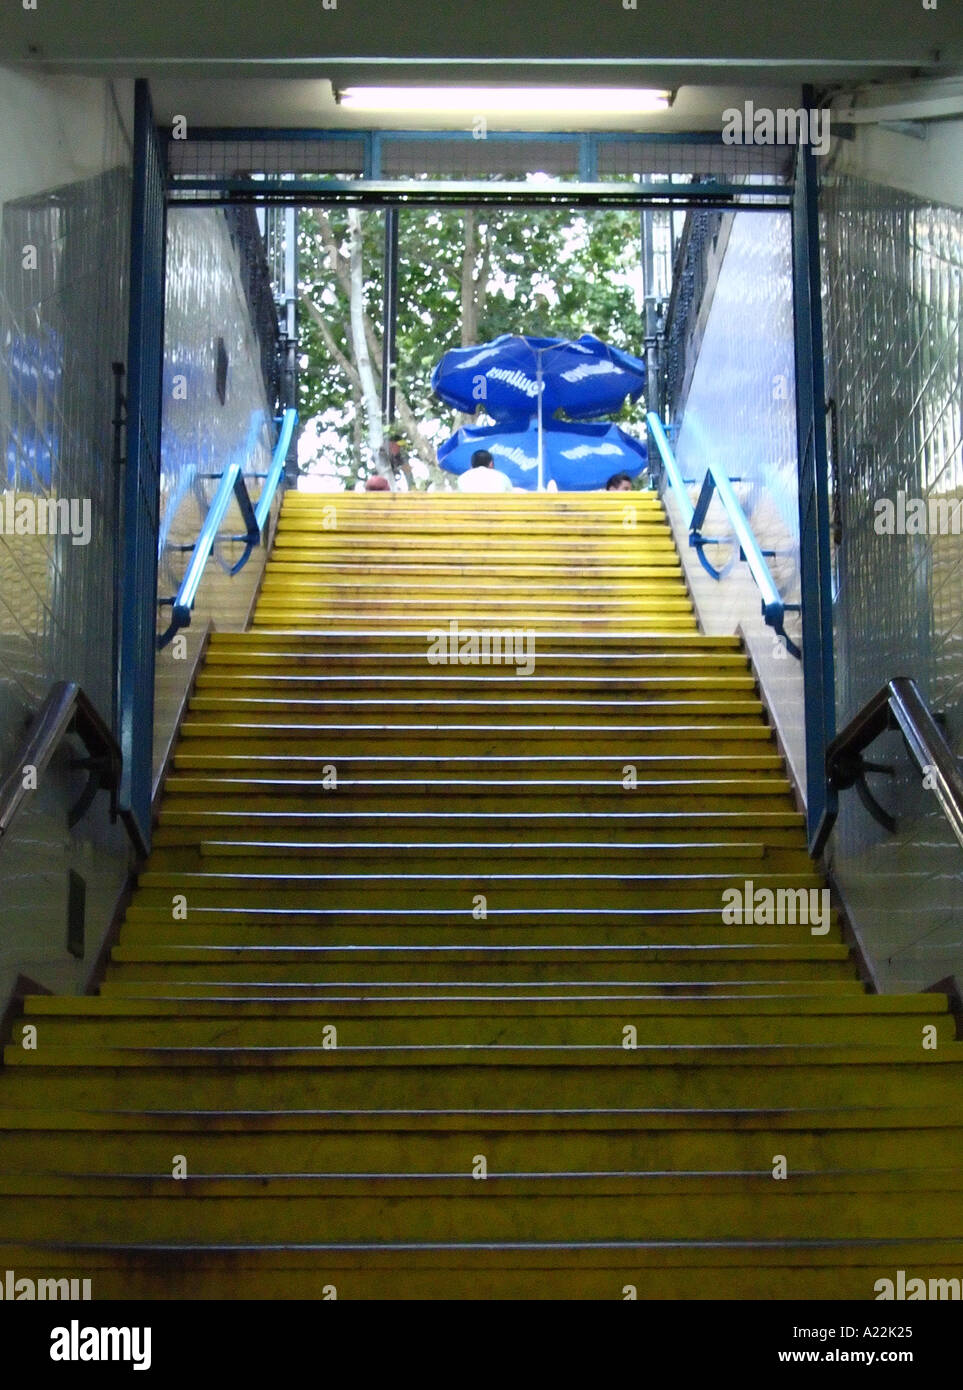 Escaliers menant à subte metro Buenos Aires Argentine Amérique du Sud Amérique latine Banque D'Images